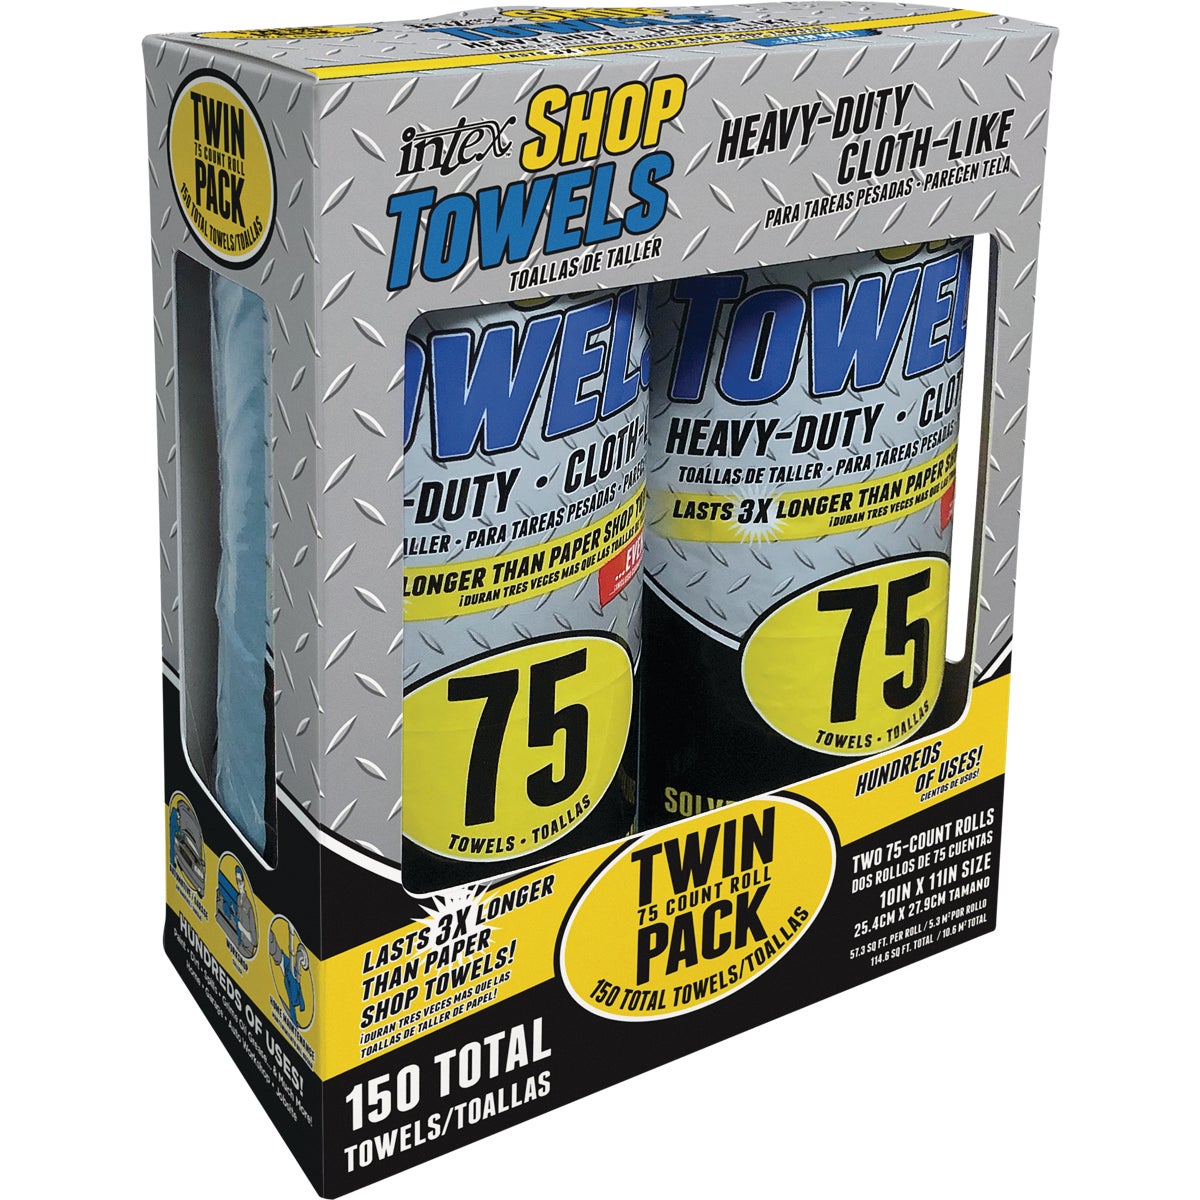 Intex Supply 10 In. x 11 In. Twin Pack Heavy-Duty Shop Towel (75-Sheets/Roll)